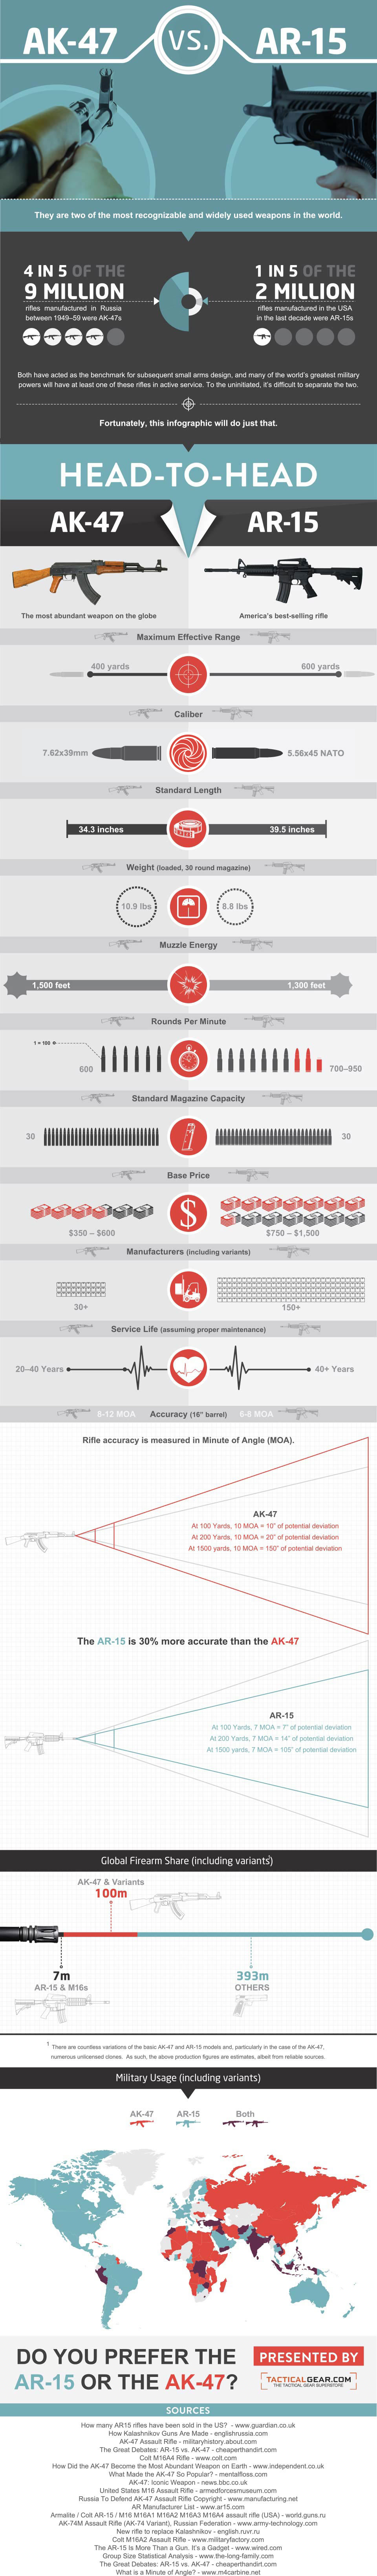 AK-47 vs. AR-15: The Small Arms Showdown